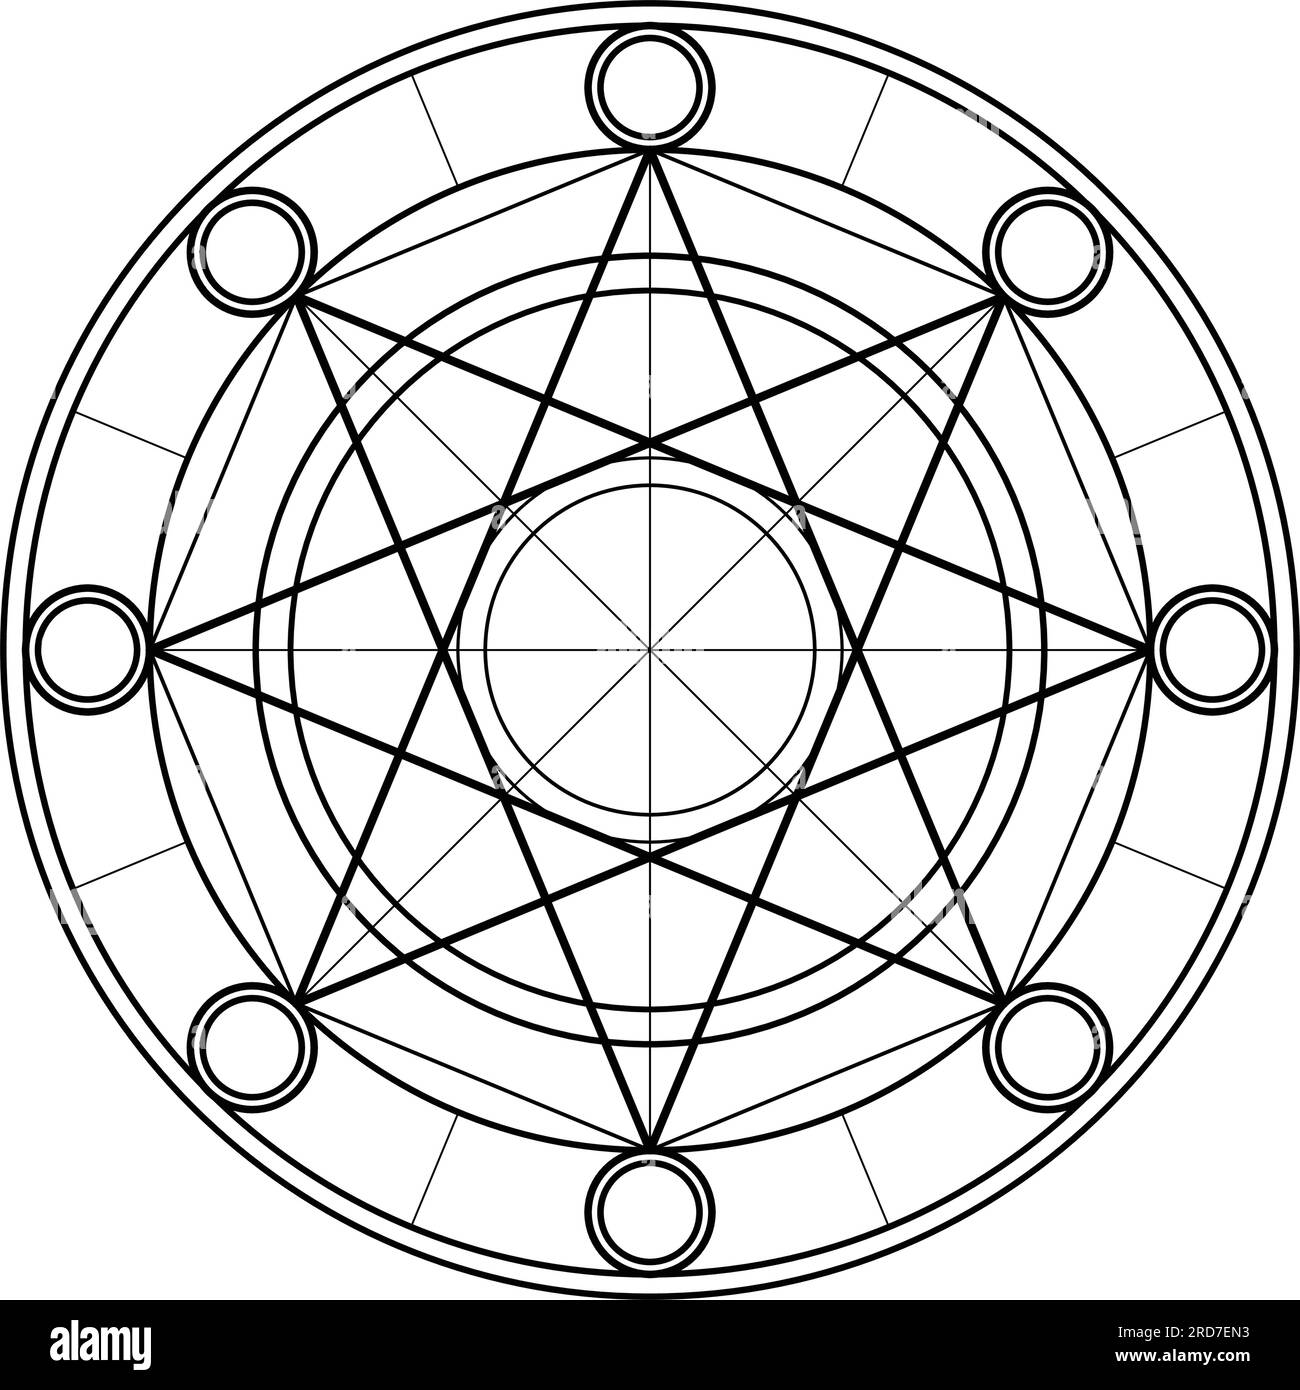 Kreisdiagramm. Vektorelemente Für Die Konstruktion Heiliger Geometrien. Diese Religion, Philosophie und Spiritualsymbole. Die Welt der Geometrie Stock Vektor